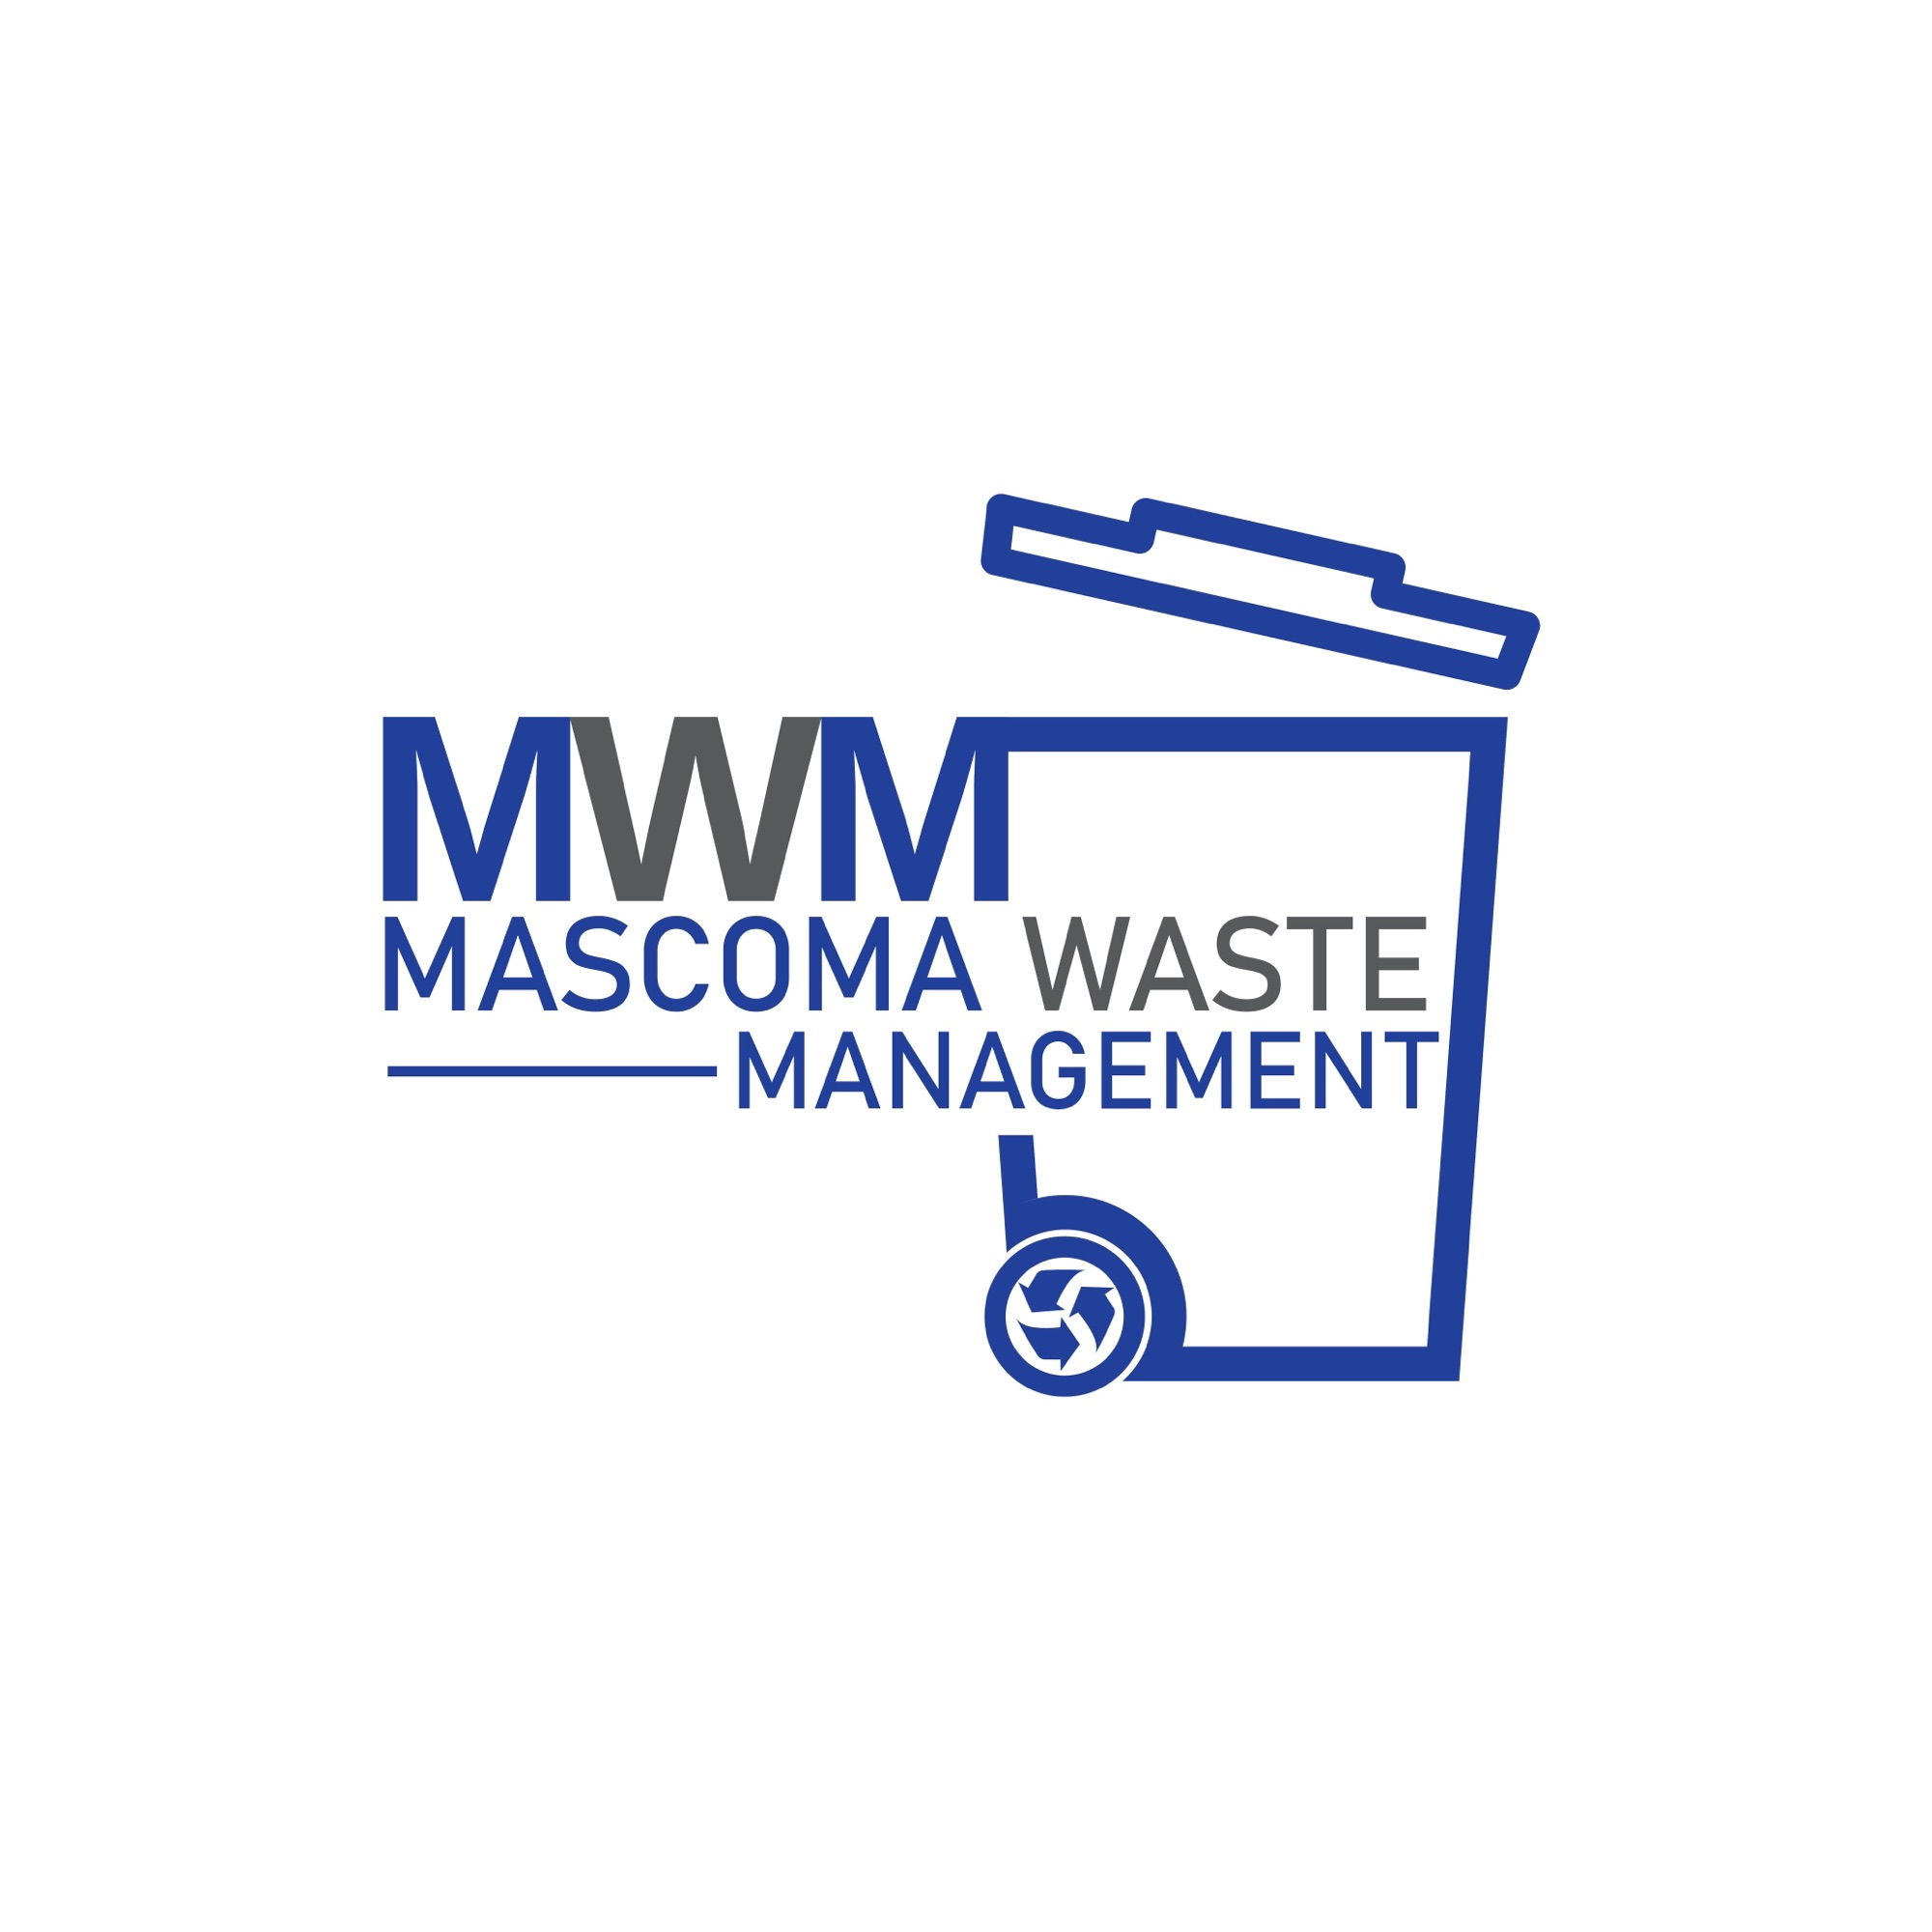 Mascoma Waste Management Logo